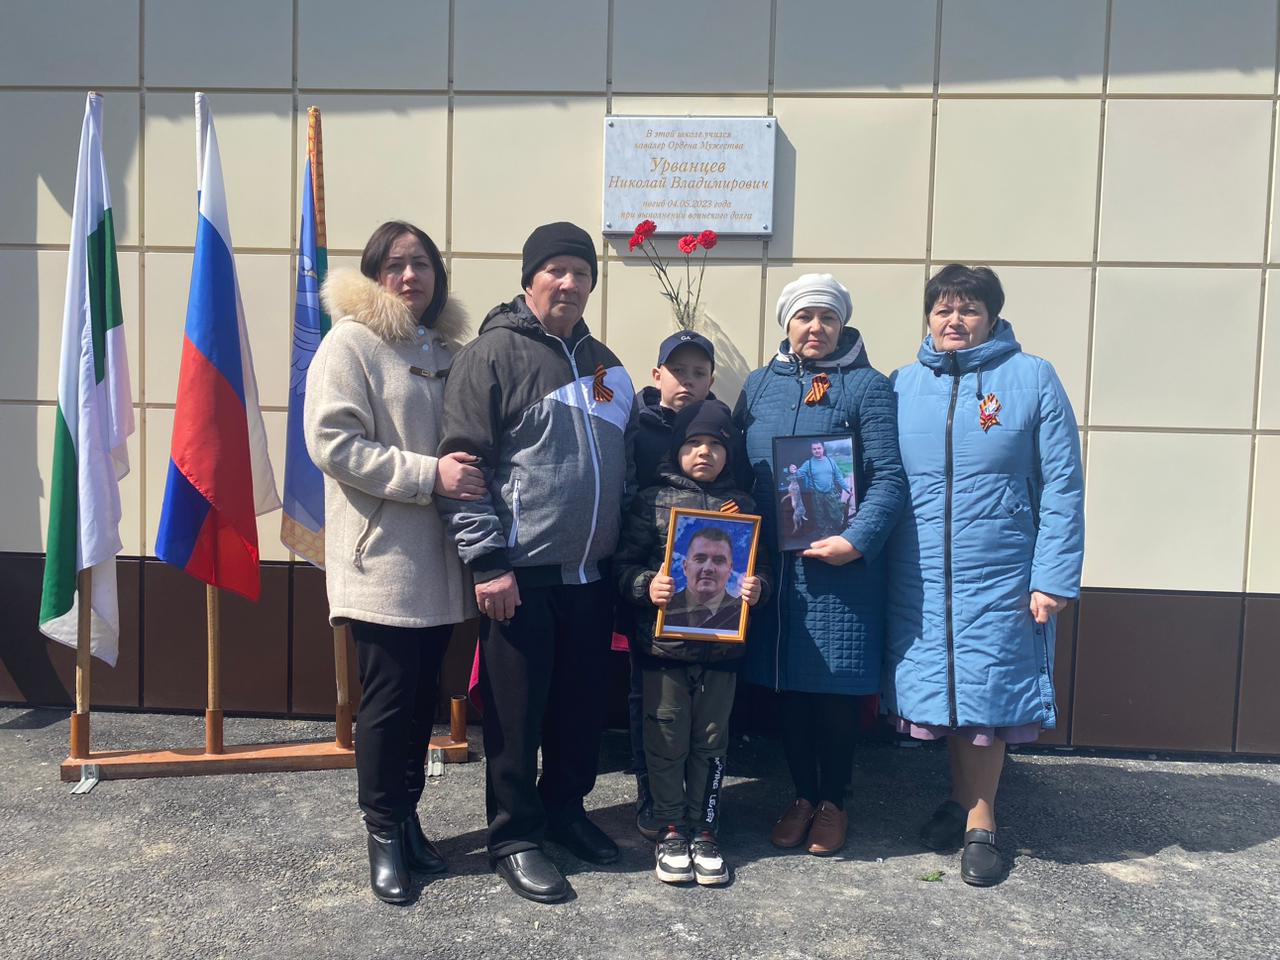 Сегодня на территории  Арлагульской СОШ  состоялось торжественное открытие мемориальной доски памяти Урванцева Николая  Владимировича.  .